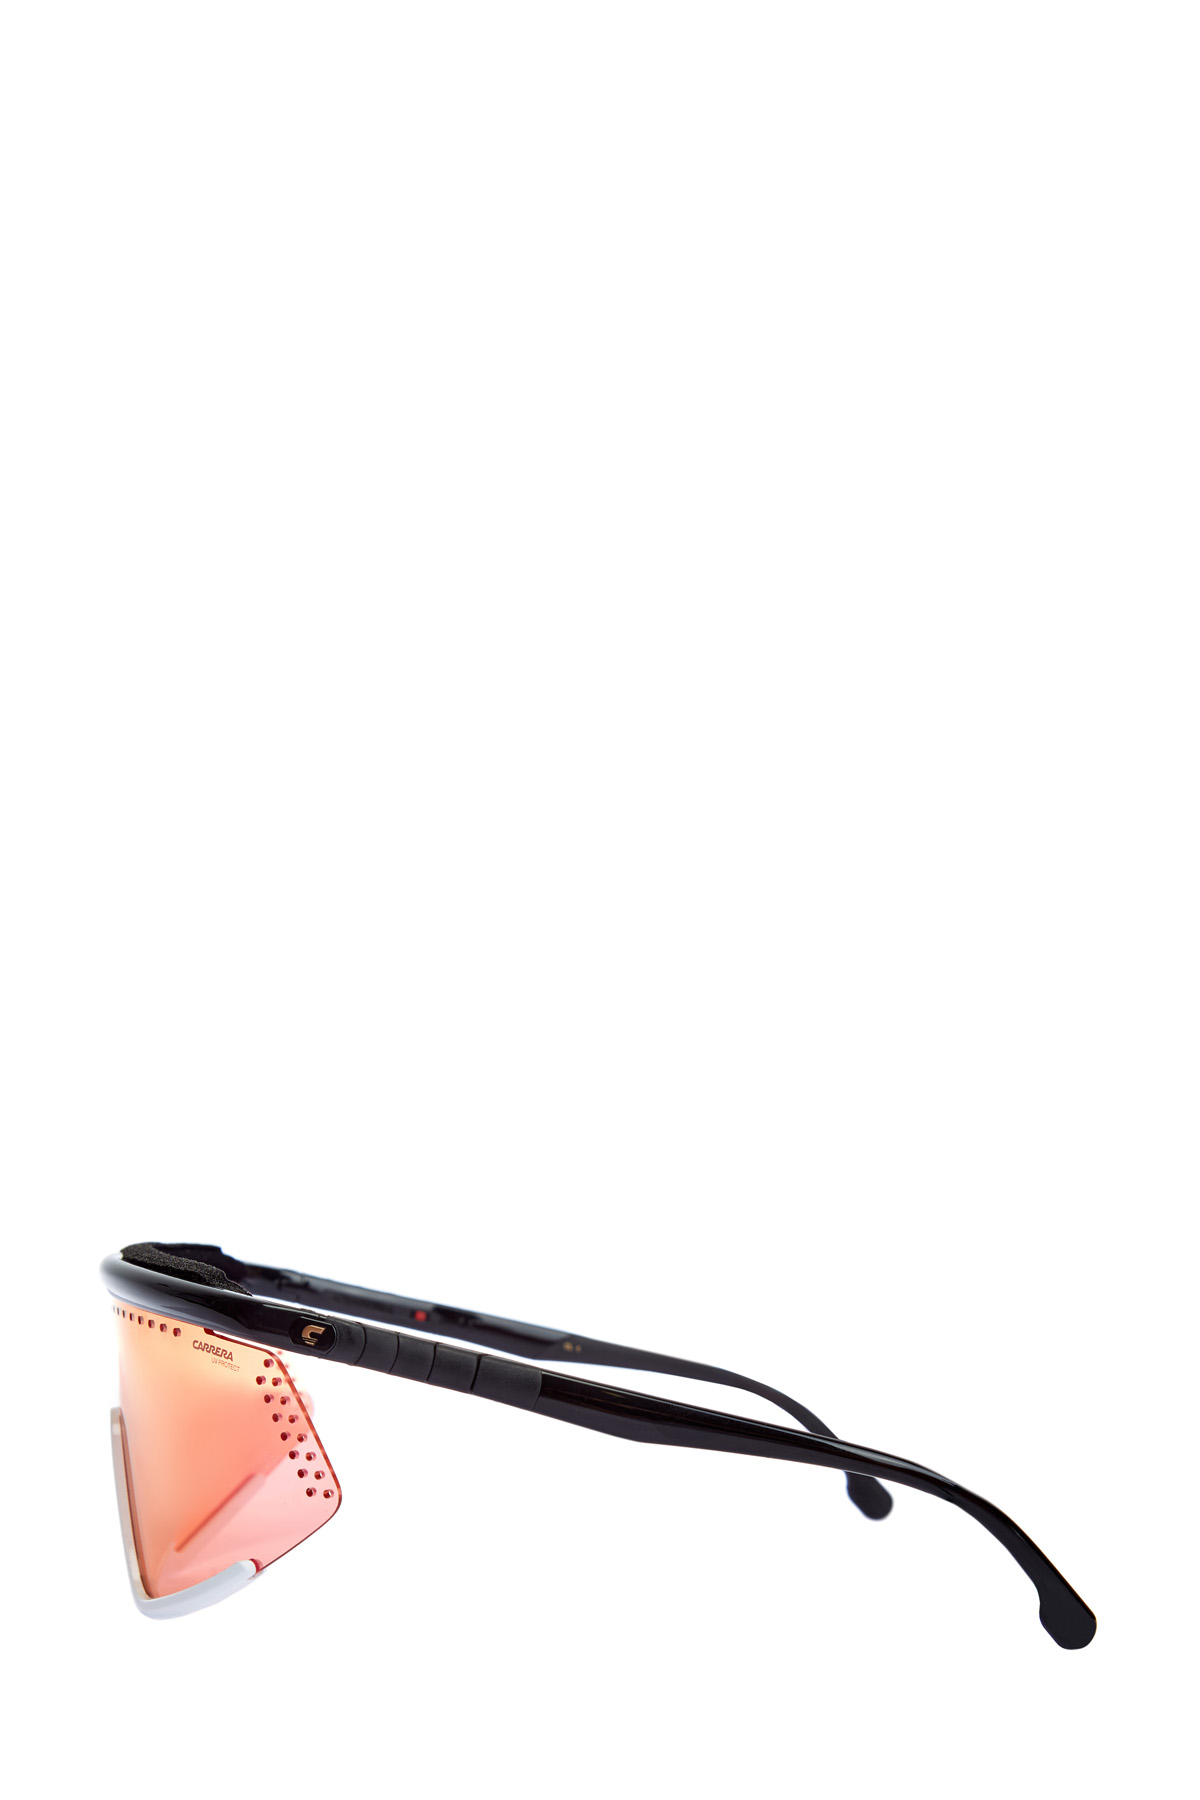 Антибликовые очки-визоры Hyper Fit с гибкими прорезиненными дужками CARRERA (sunglasses), цвет мульти, размер 39;40 - фото 2